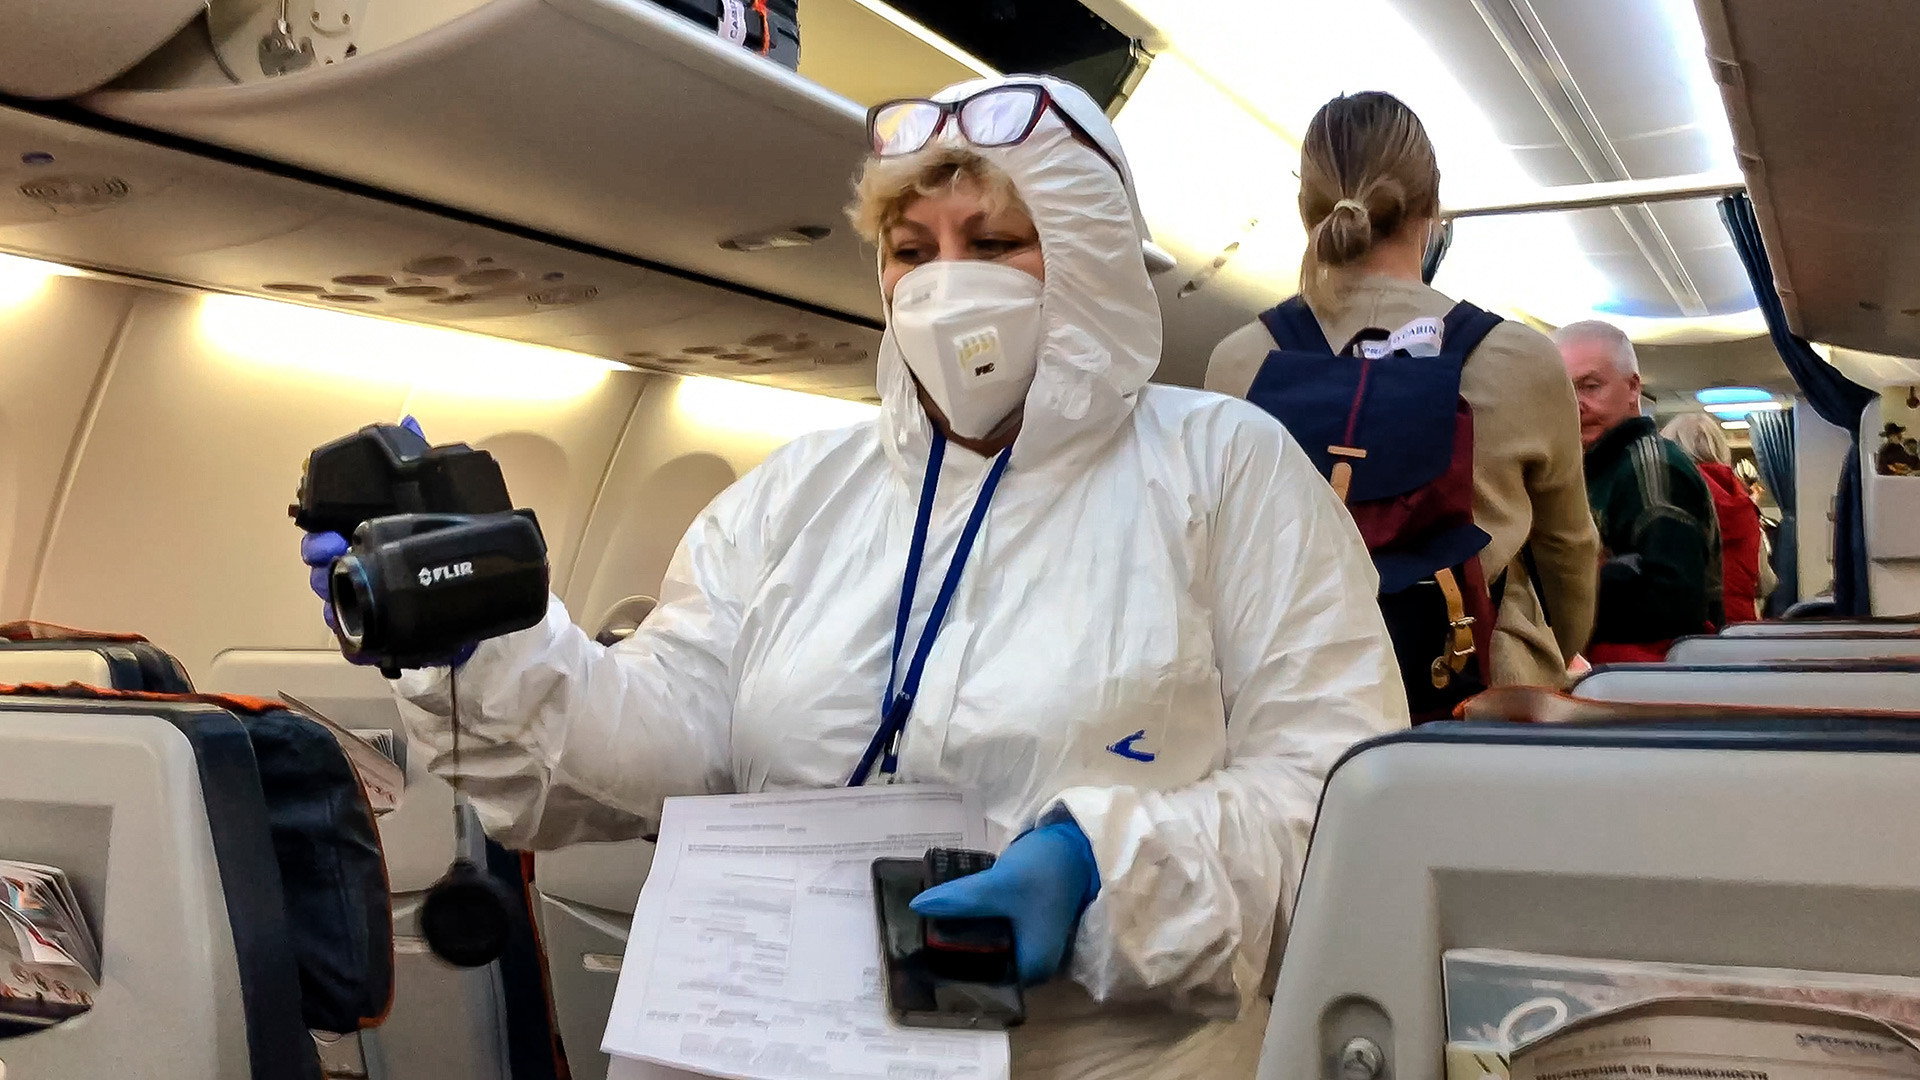 Руски медицински експерт ги проверува патниците кои пристигнуваат од Италија внатре во авионот на аеродромот Шереметјево, Москва, 8 март 2020 година.